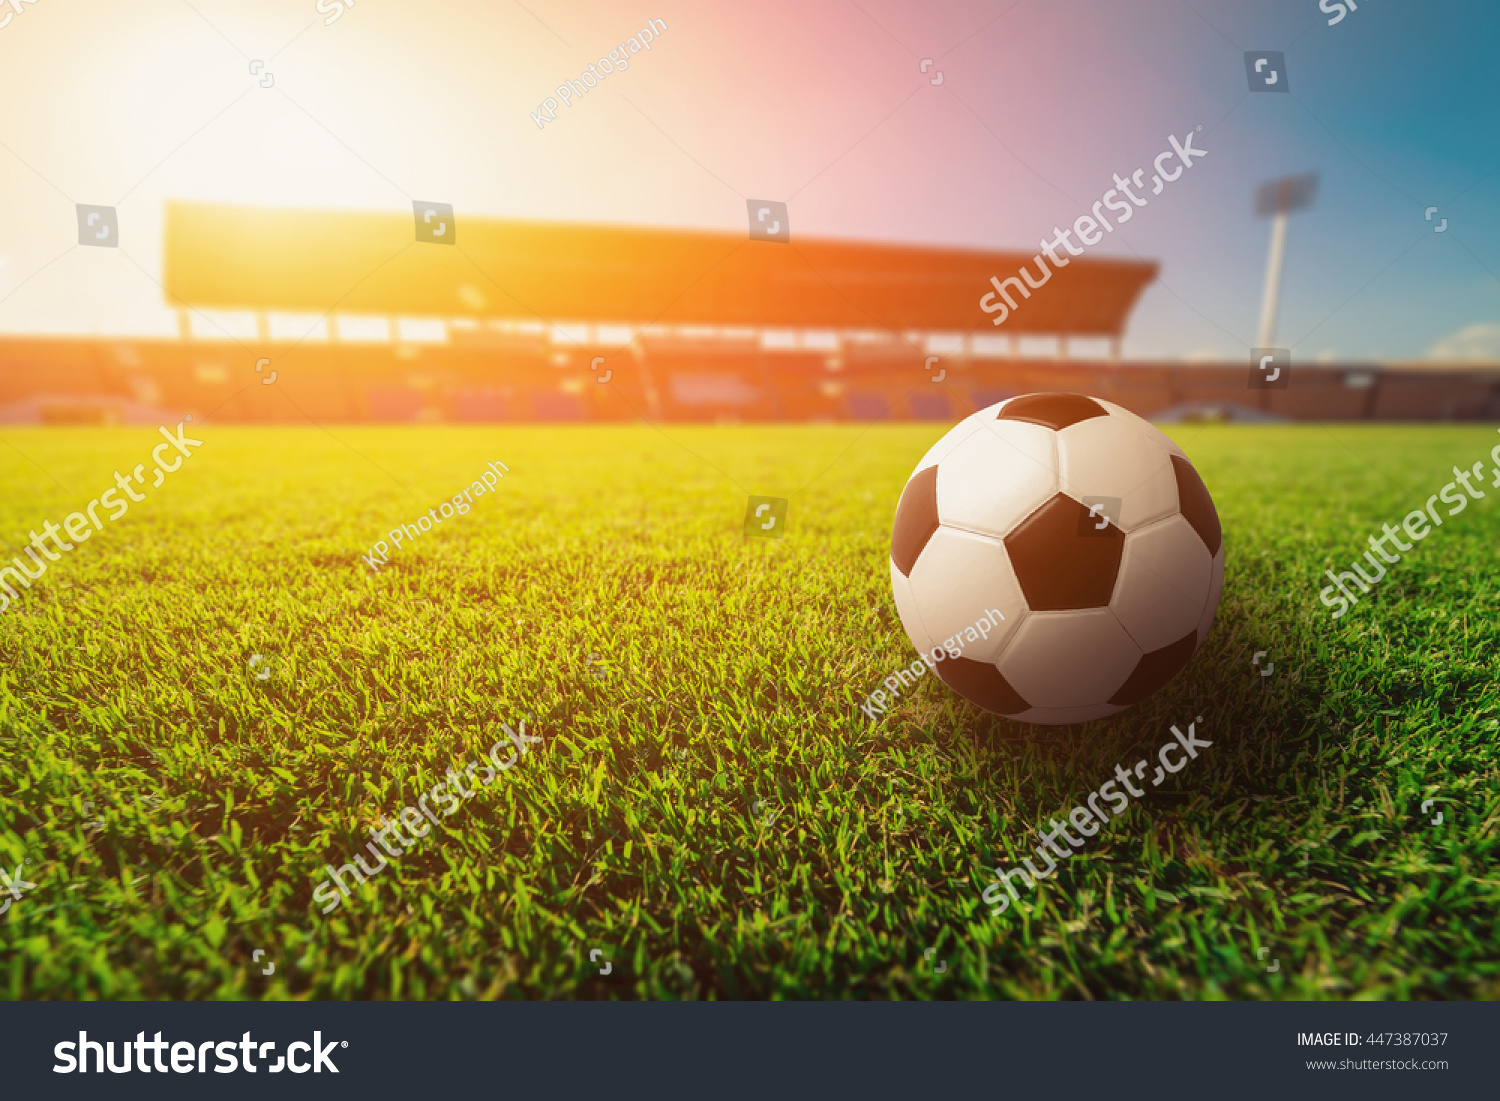 Soccer ball on grass in soccer stadium. 
 #447387037